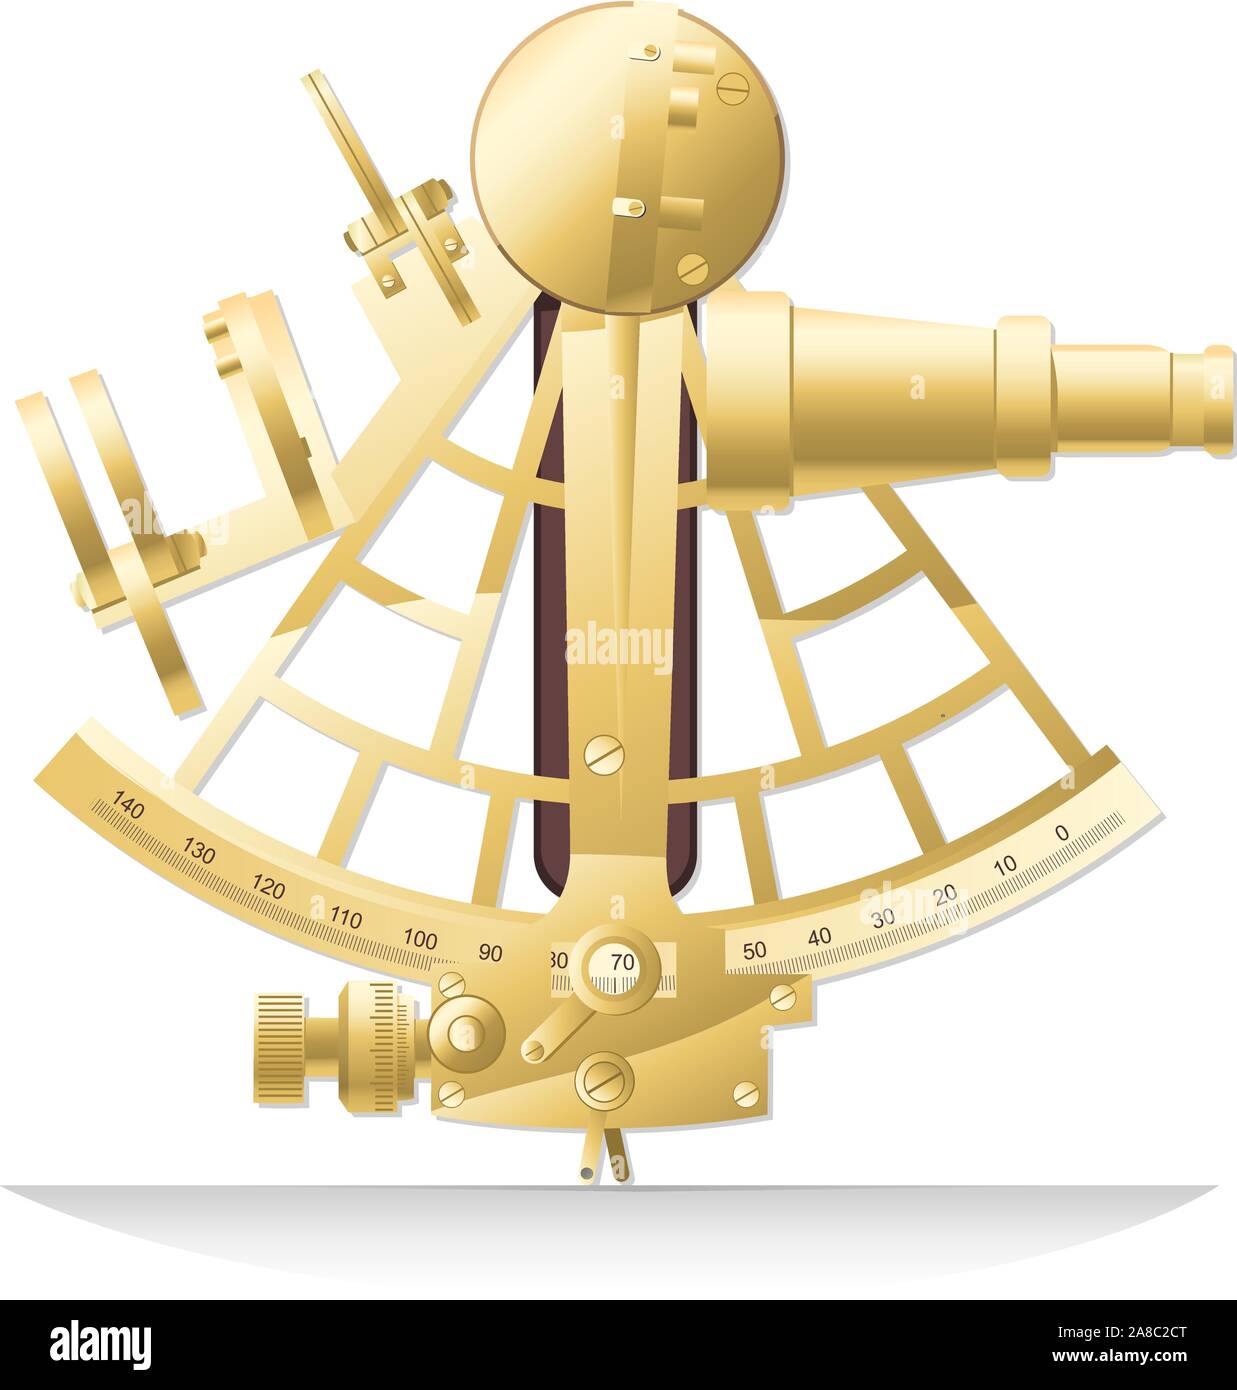 Alte goldene Messing sextanten Old Fashion Segeln Instrument Vector Illustration. Stock Vektor